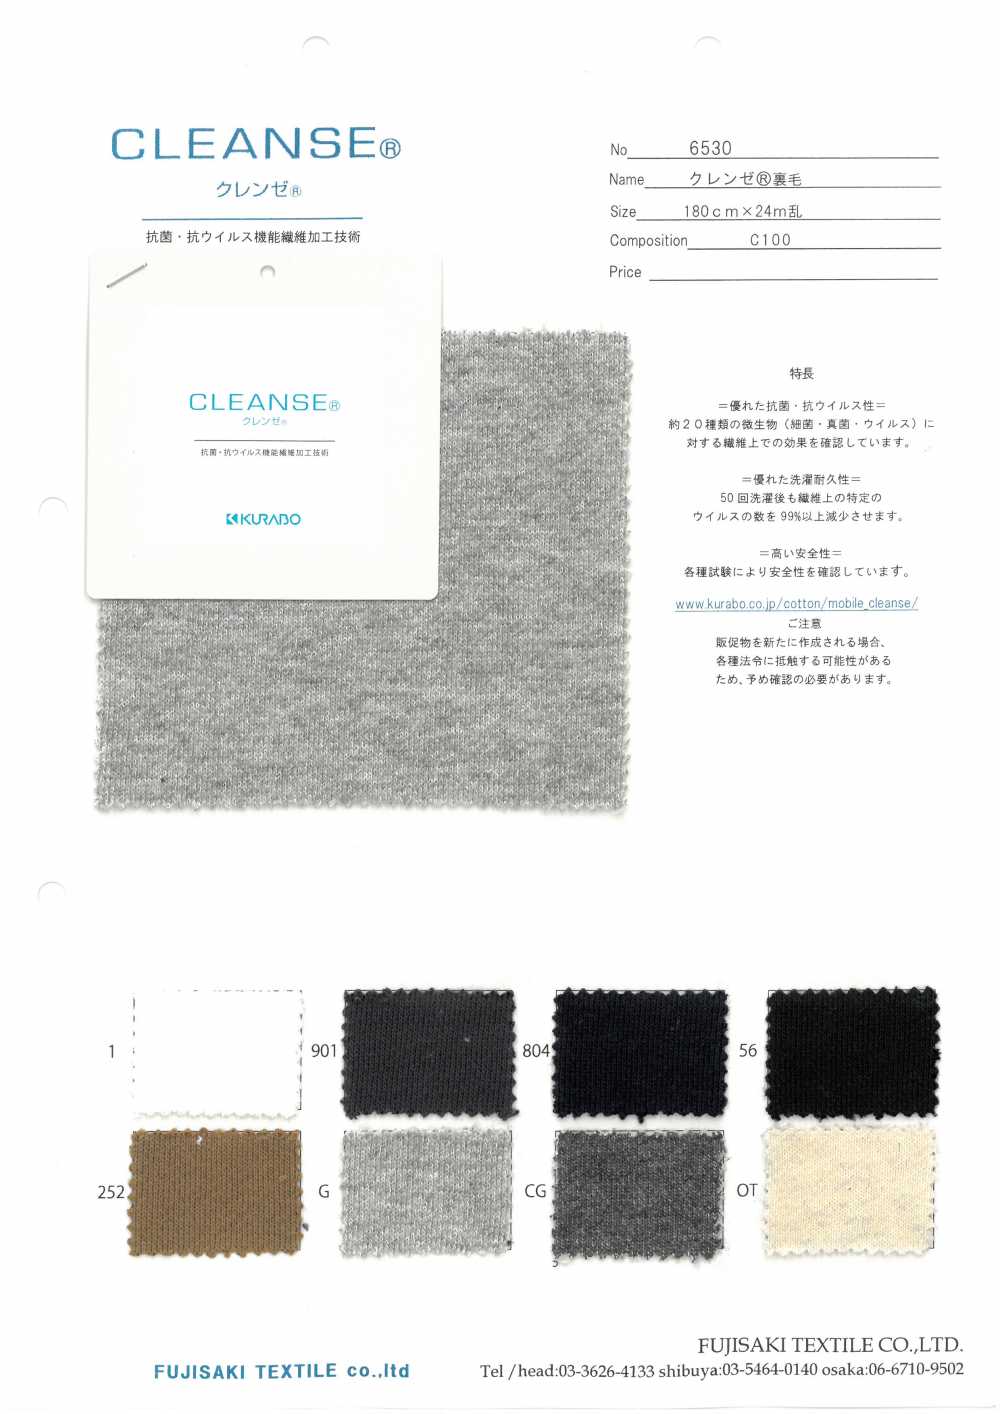 6530 CLEANSE& # 174; Vải Thun Nỉ Fujisaki Textile